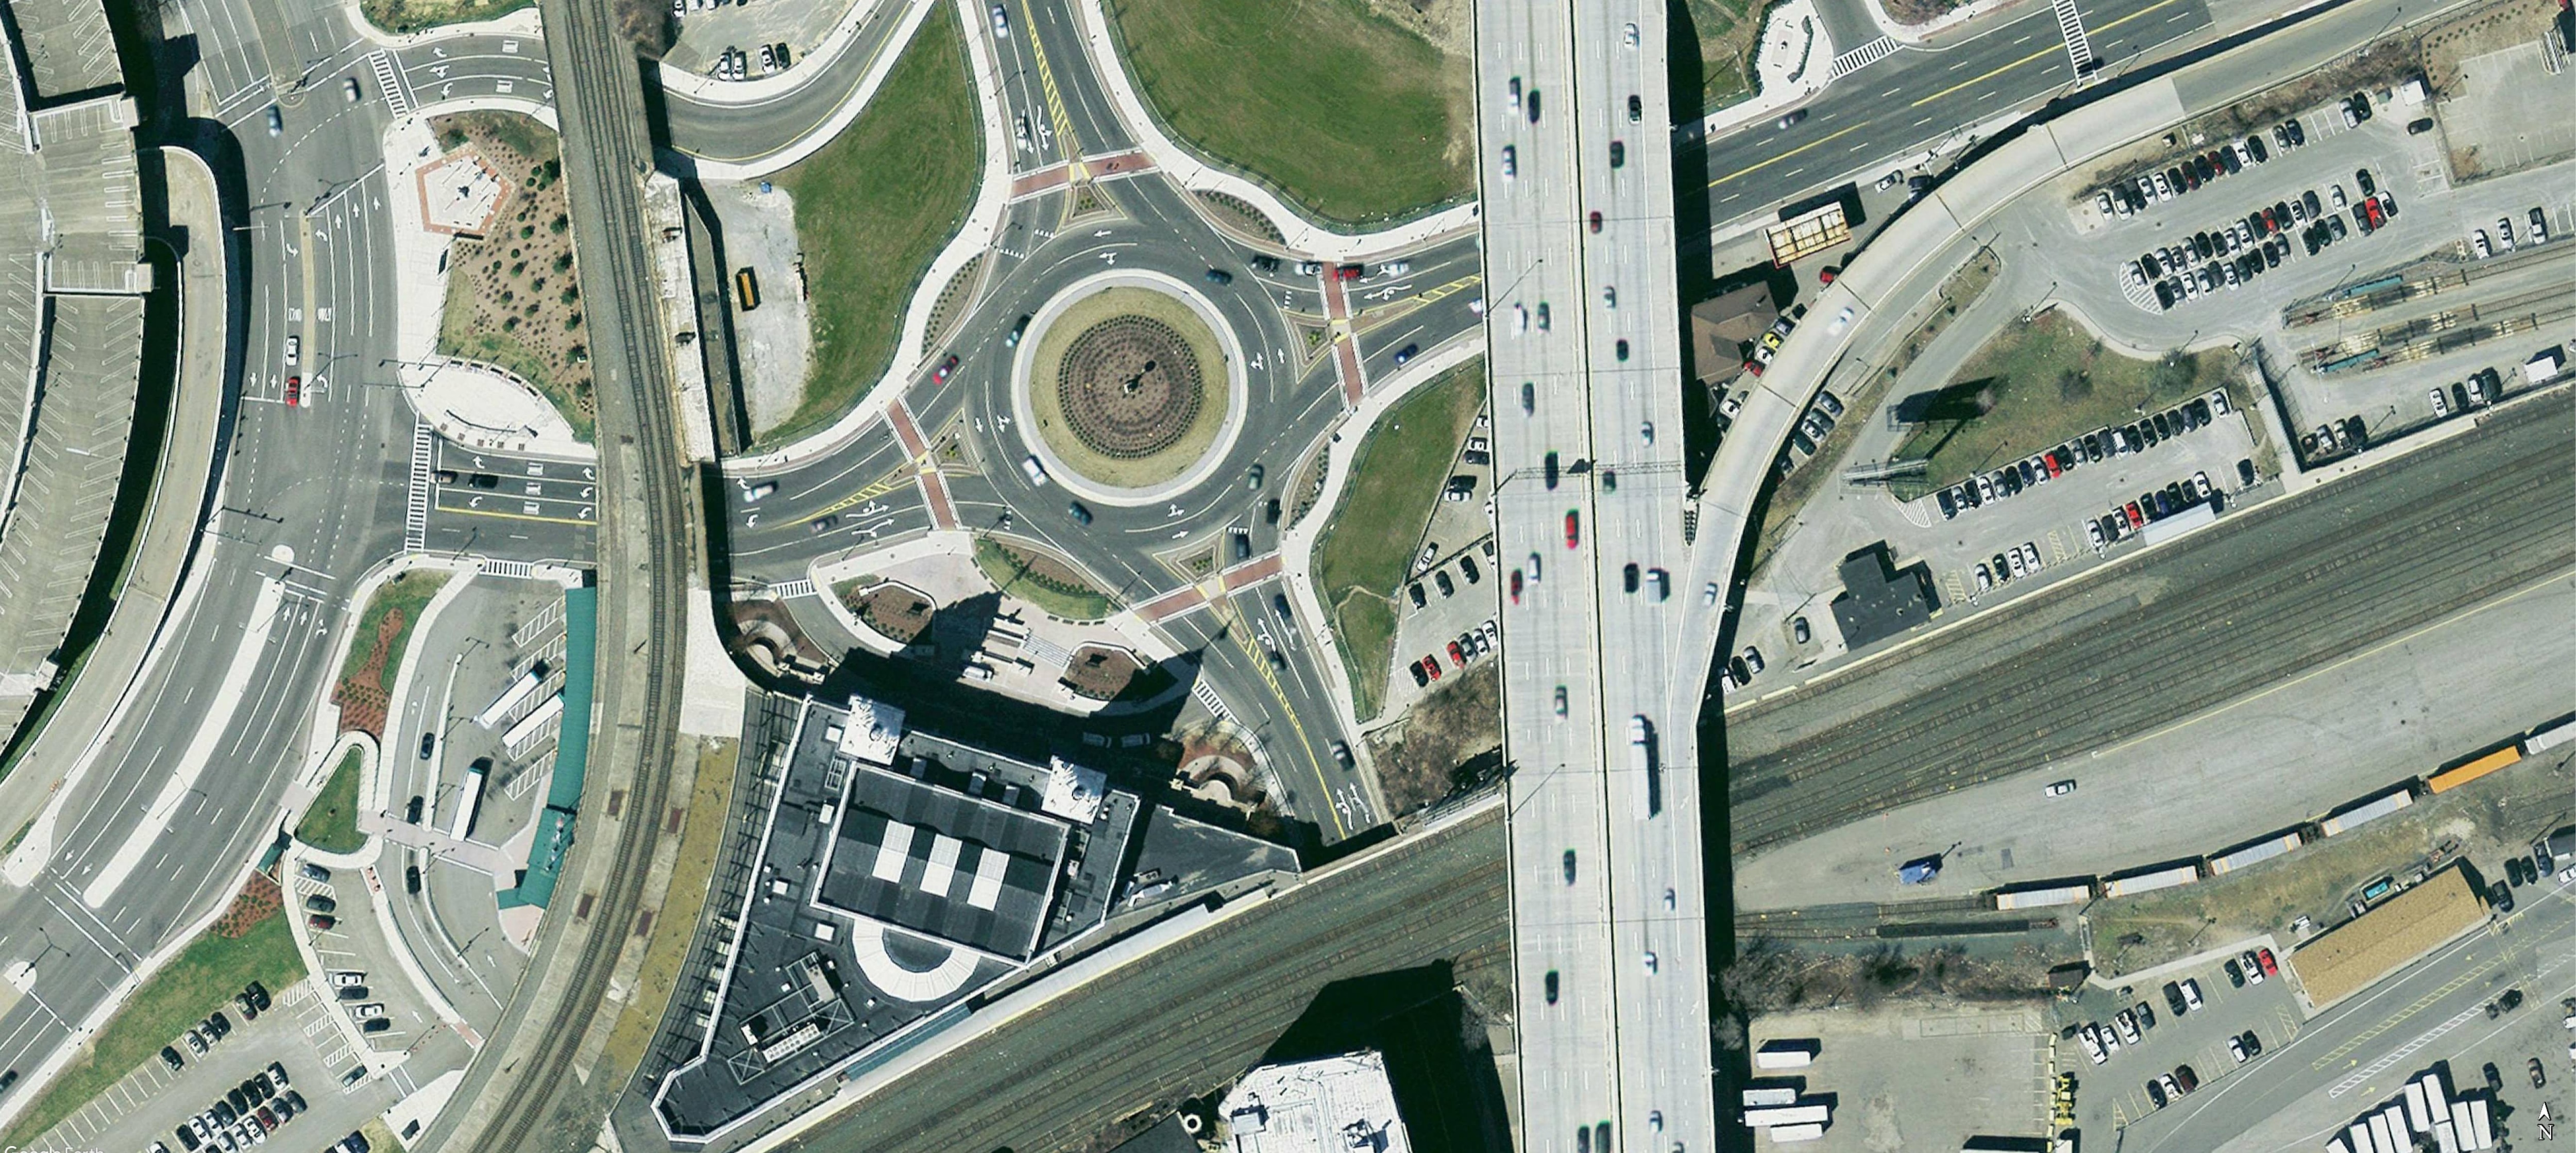 Worcester, Washington Square. Urban multilane roundabout. 